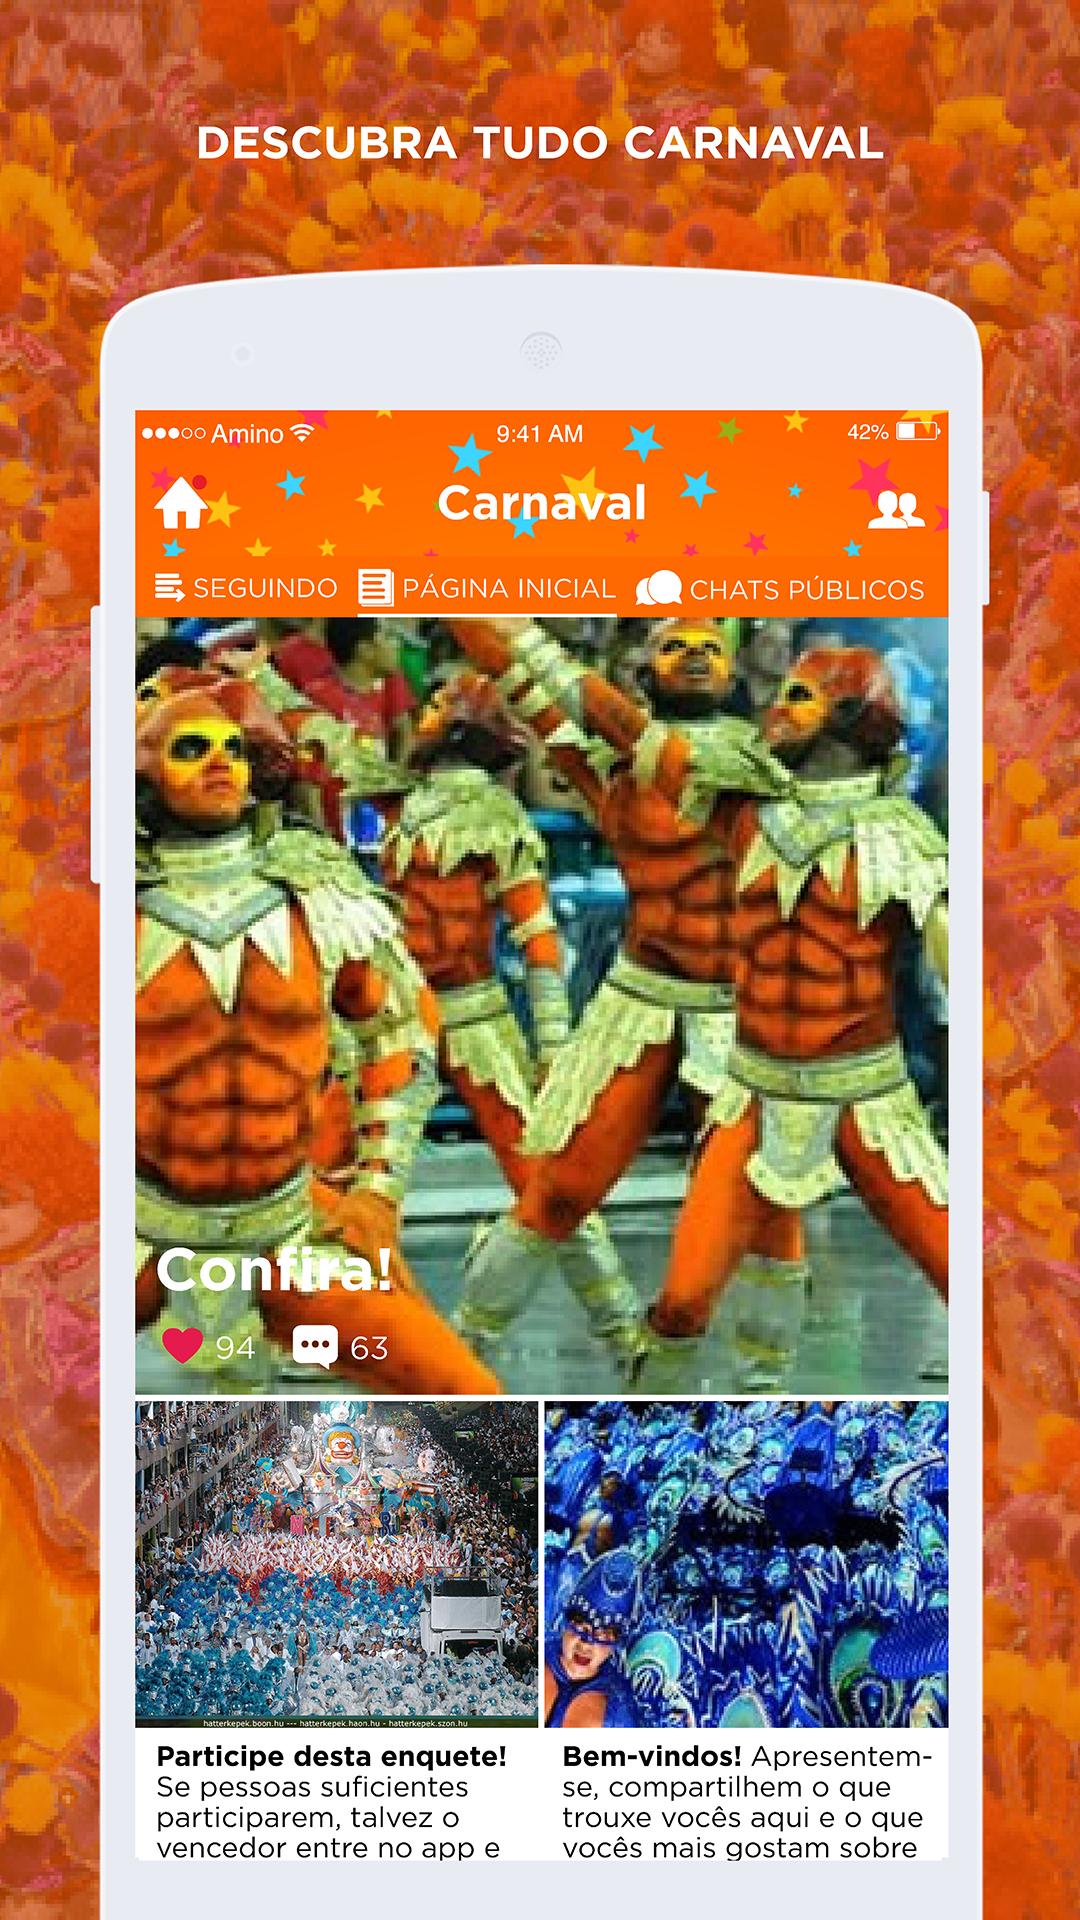 Carnaval For Android Apk Download - evento heroes roblox amino en español amino